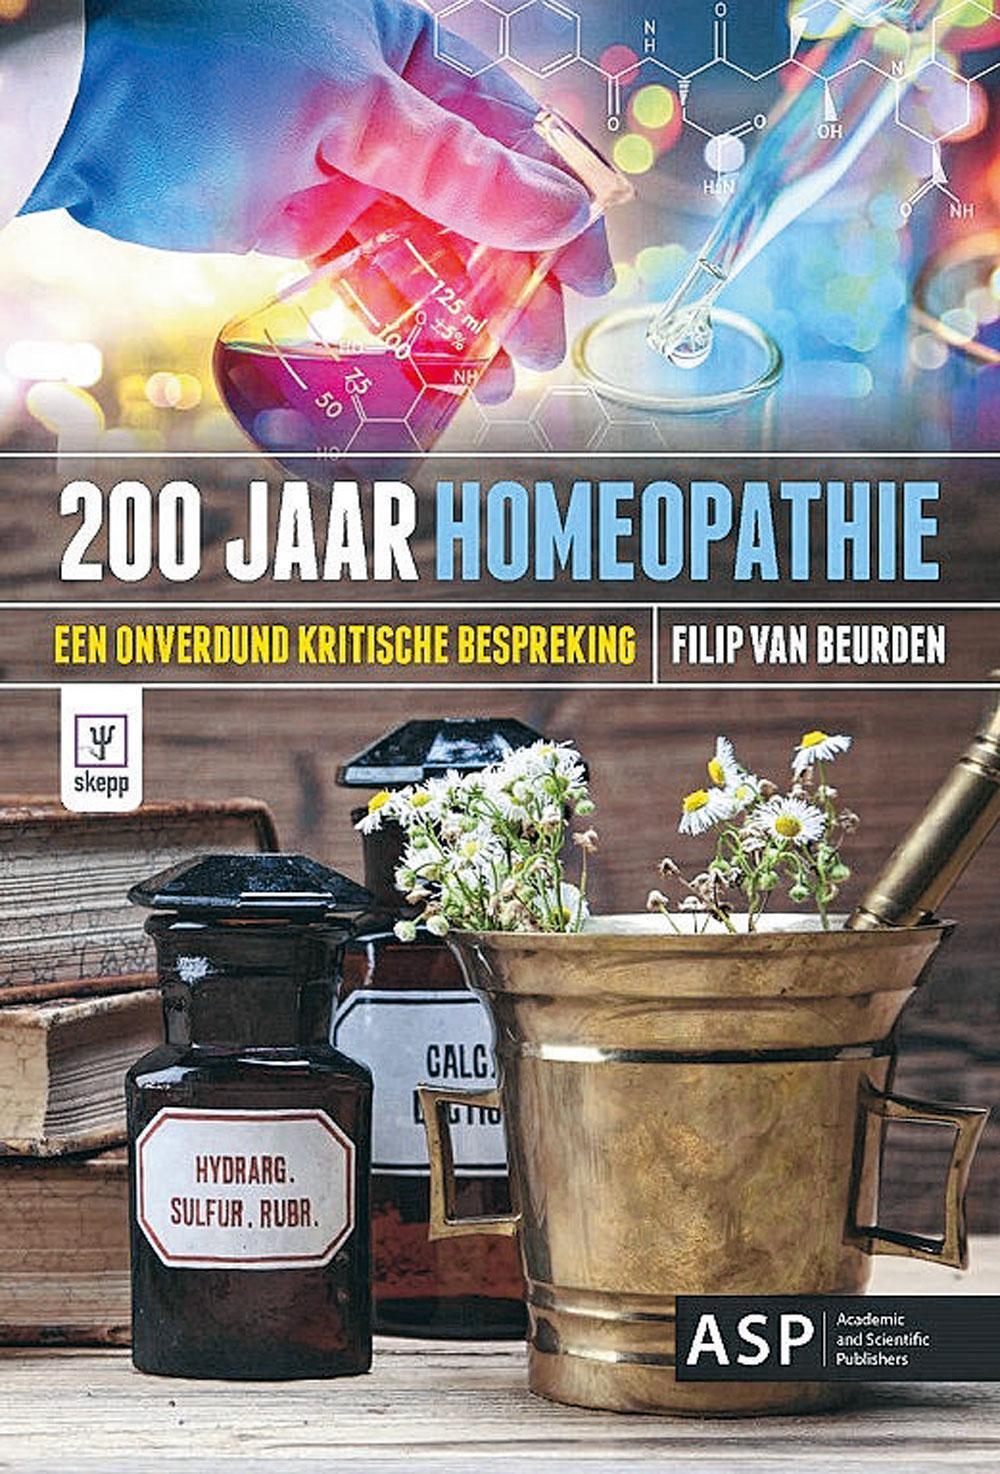 Filip Van Beurden in samenwerking met SKEPP, 200 jaar homeopathie: een onverdund kritische bespreking, ASP, 146 blz., 17,50 euro.